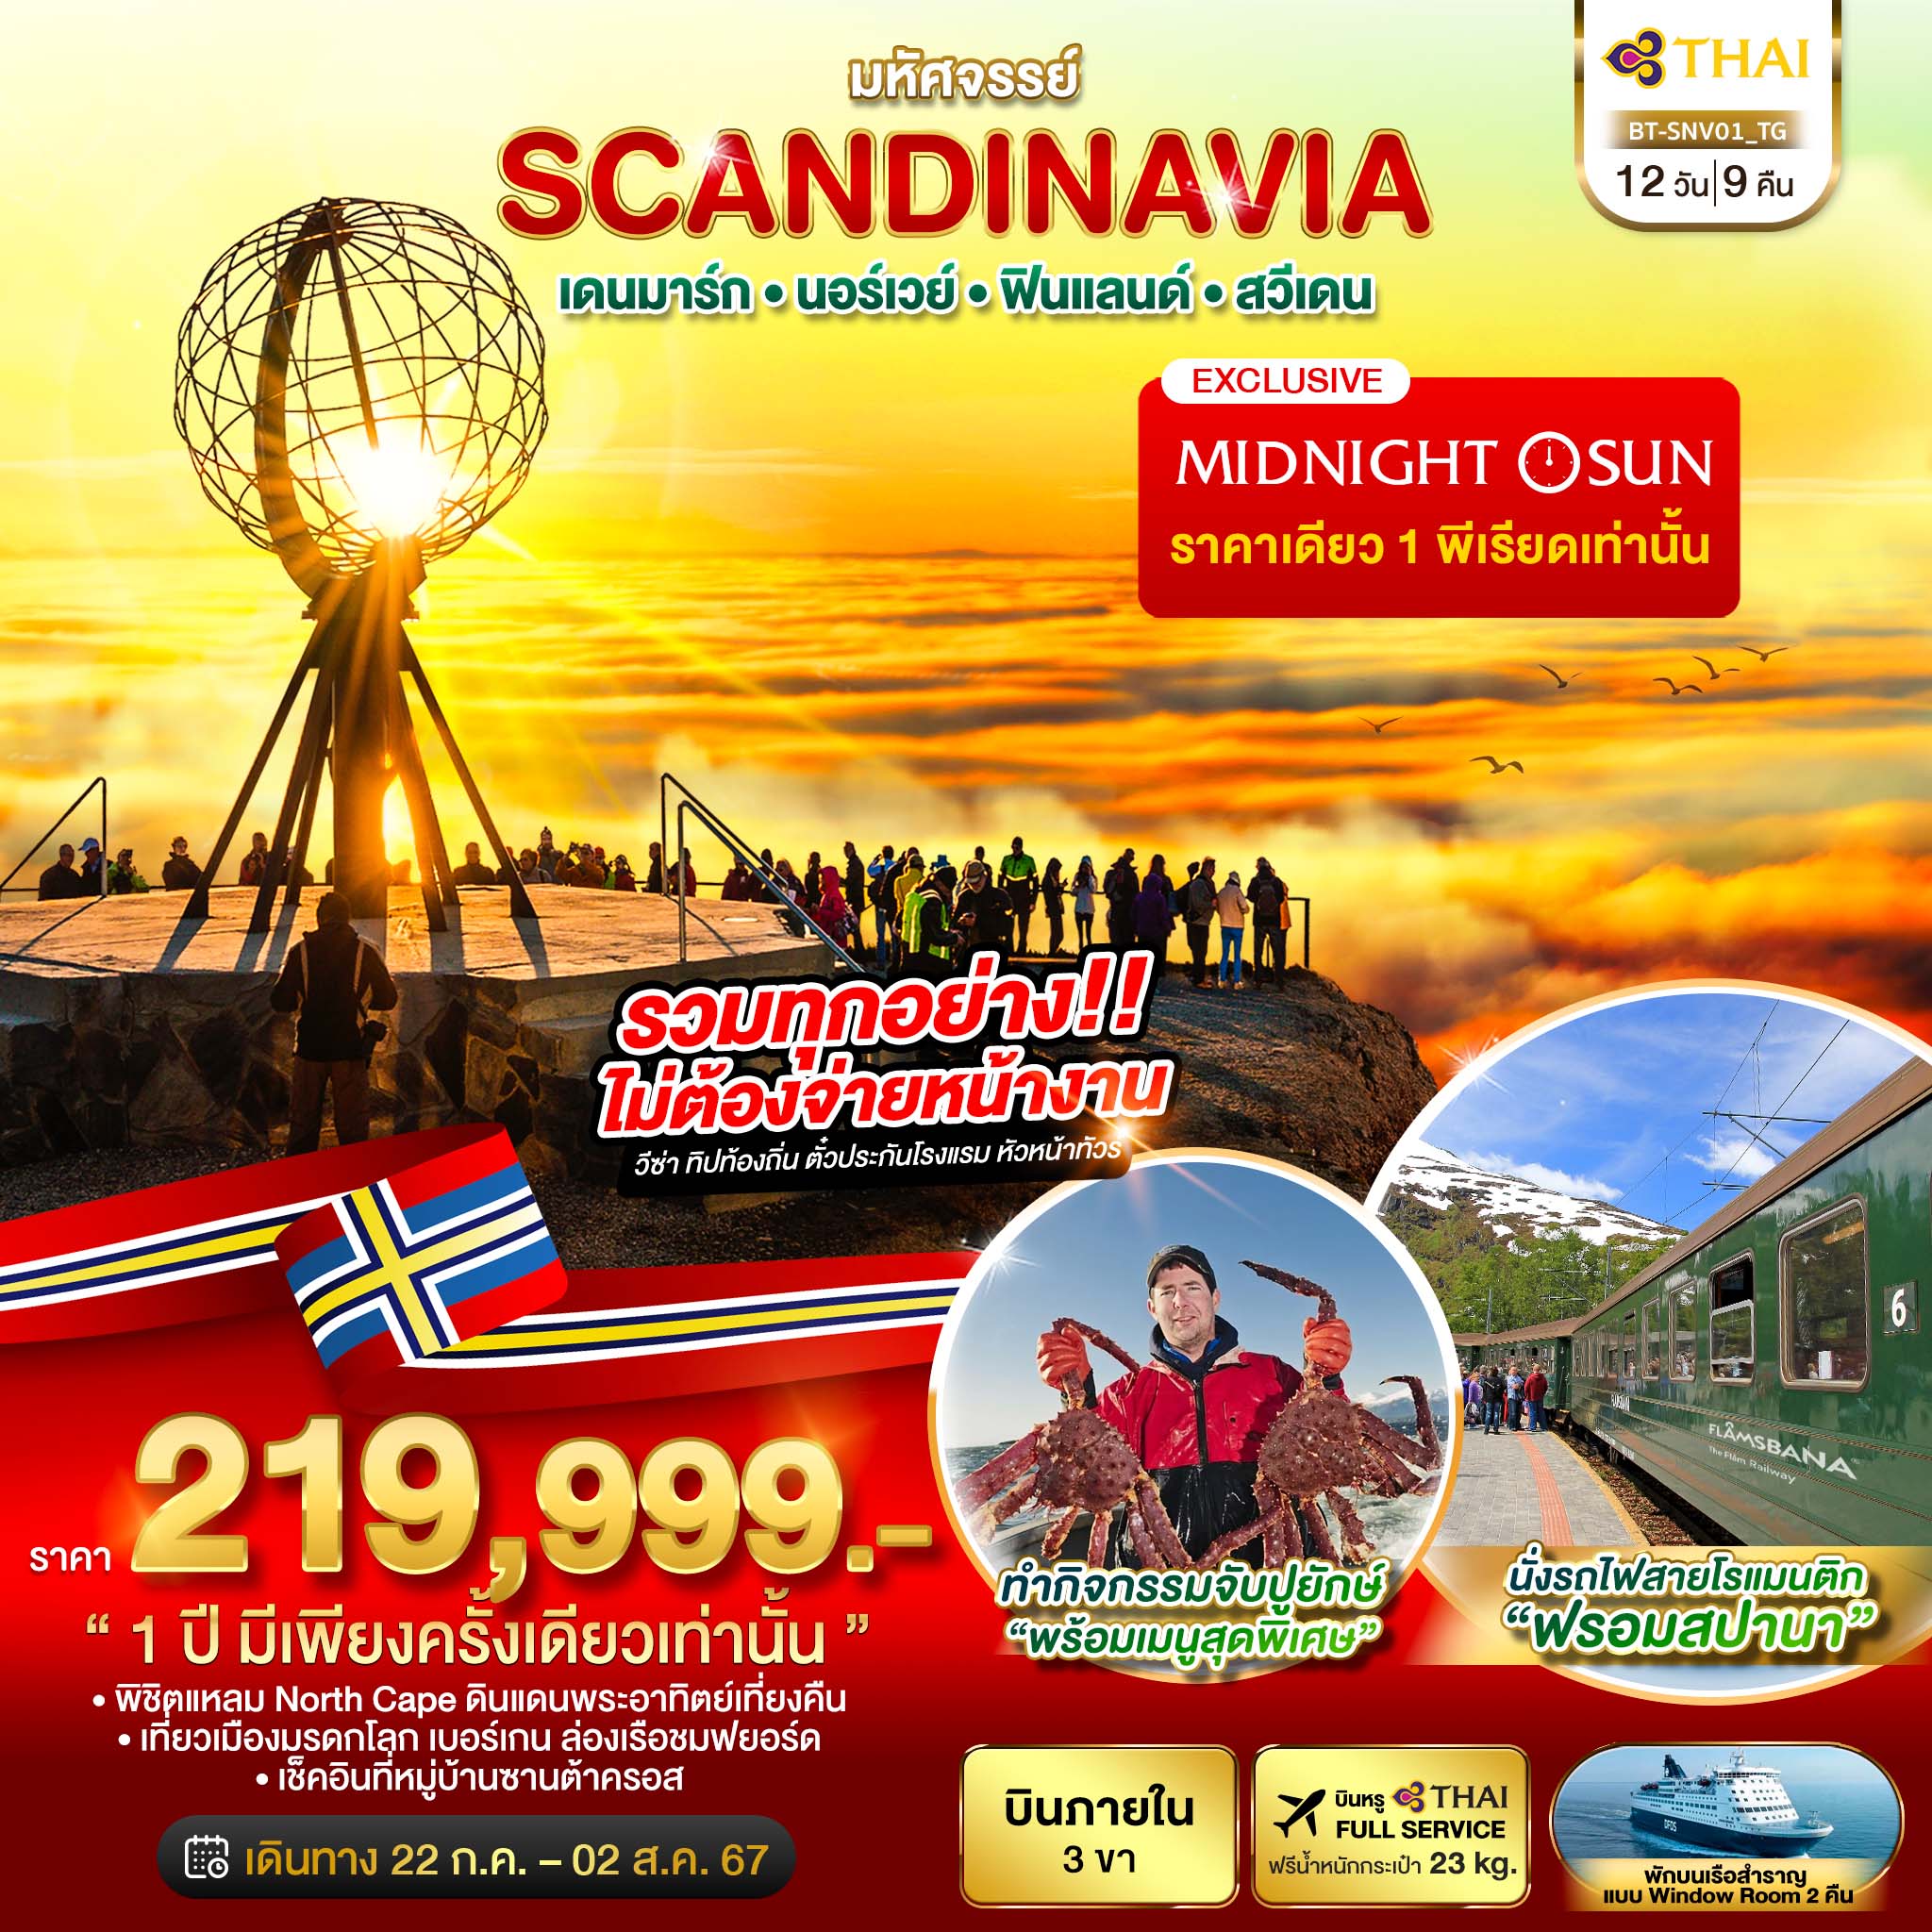 ทัวร์ยุโรป มหัศจรรย์ SCANDINAVIA เดนมาร์ก นอร์เวย์ ฟินแลนด์ สวีเดน 12วัน 9คืน TG